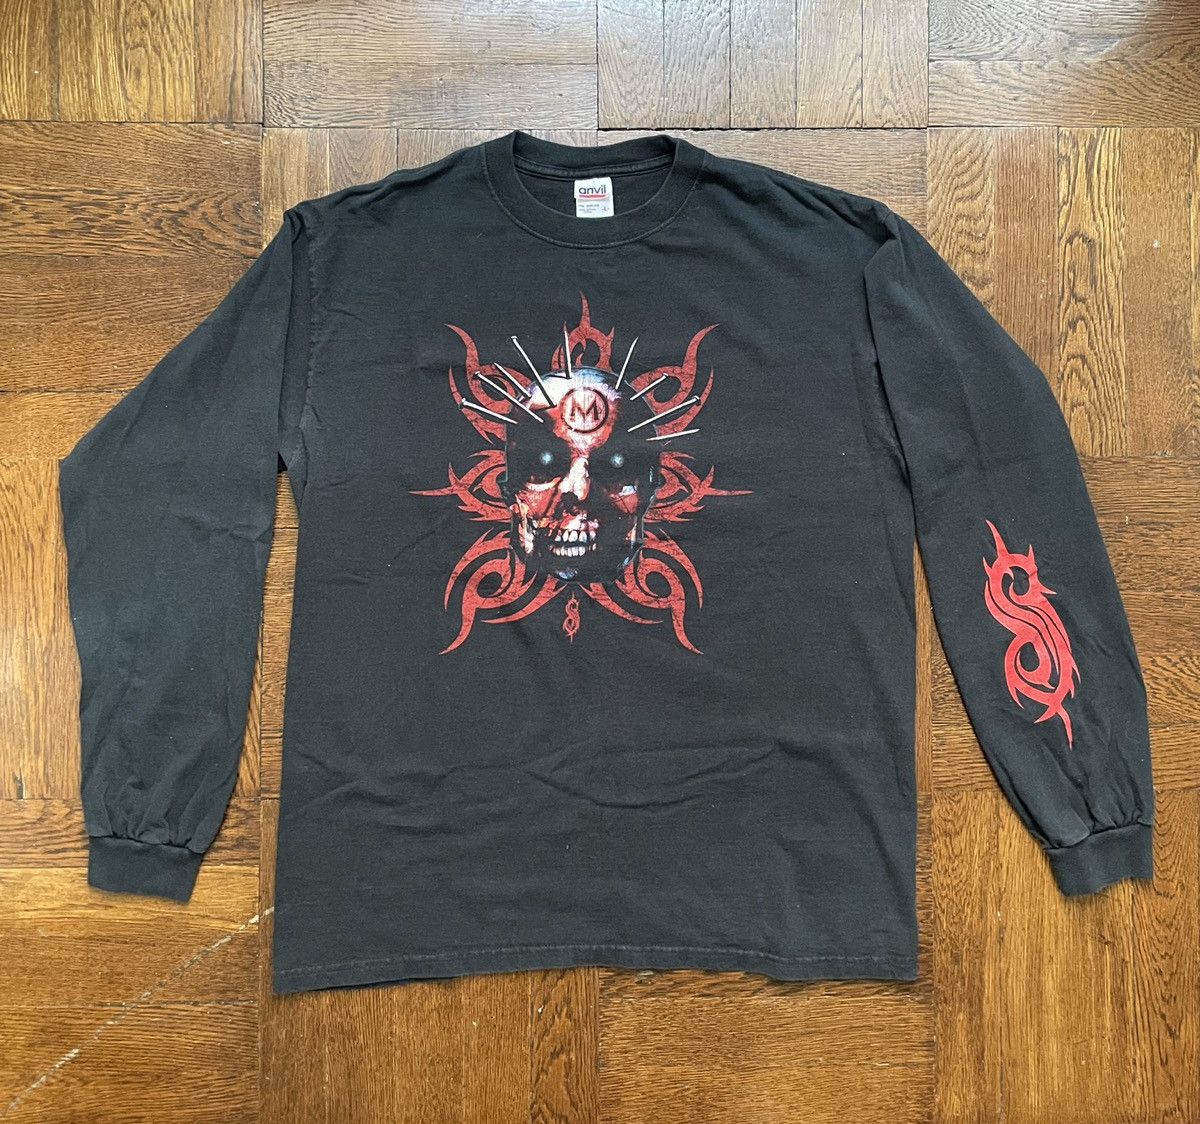 Vintage Vintage Slipknot Long Sleeve T Shirt - Y2K 2001 Metal